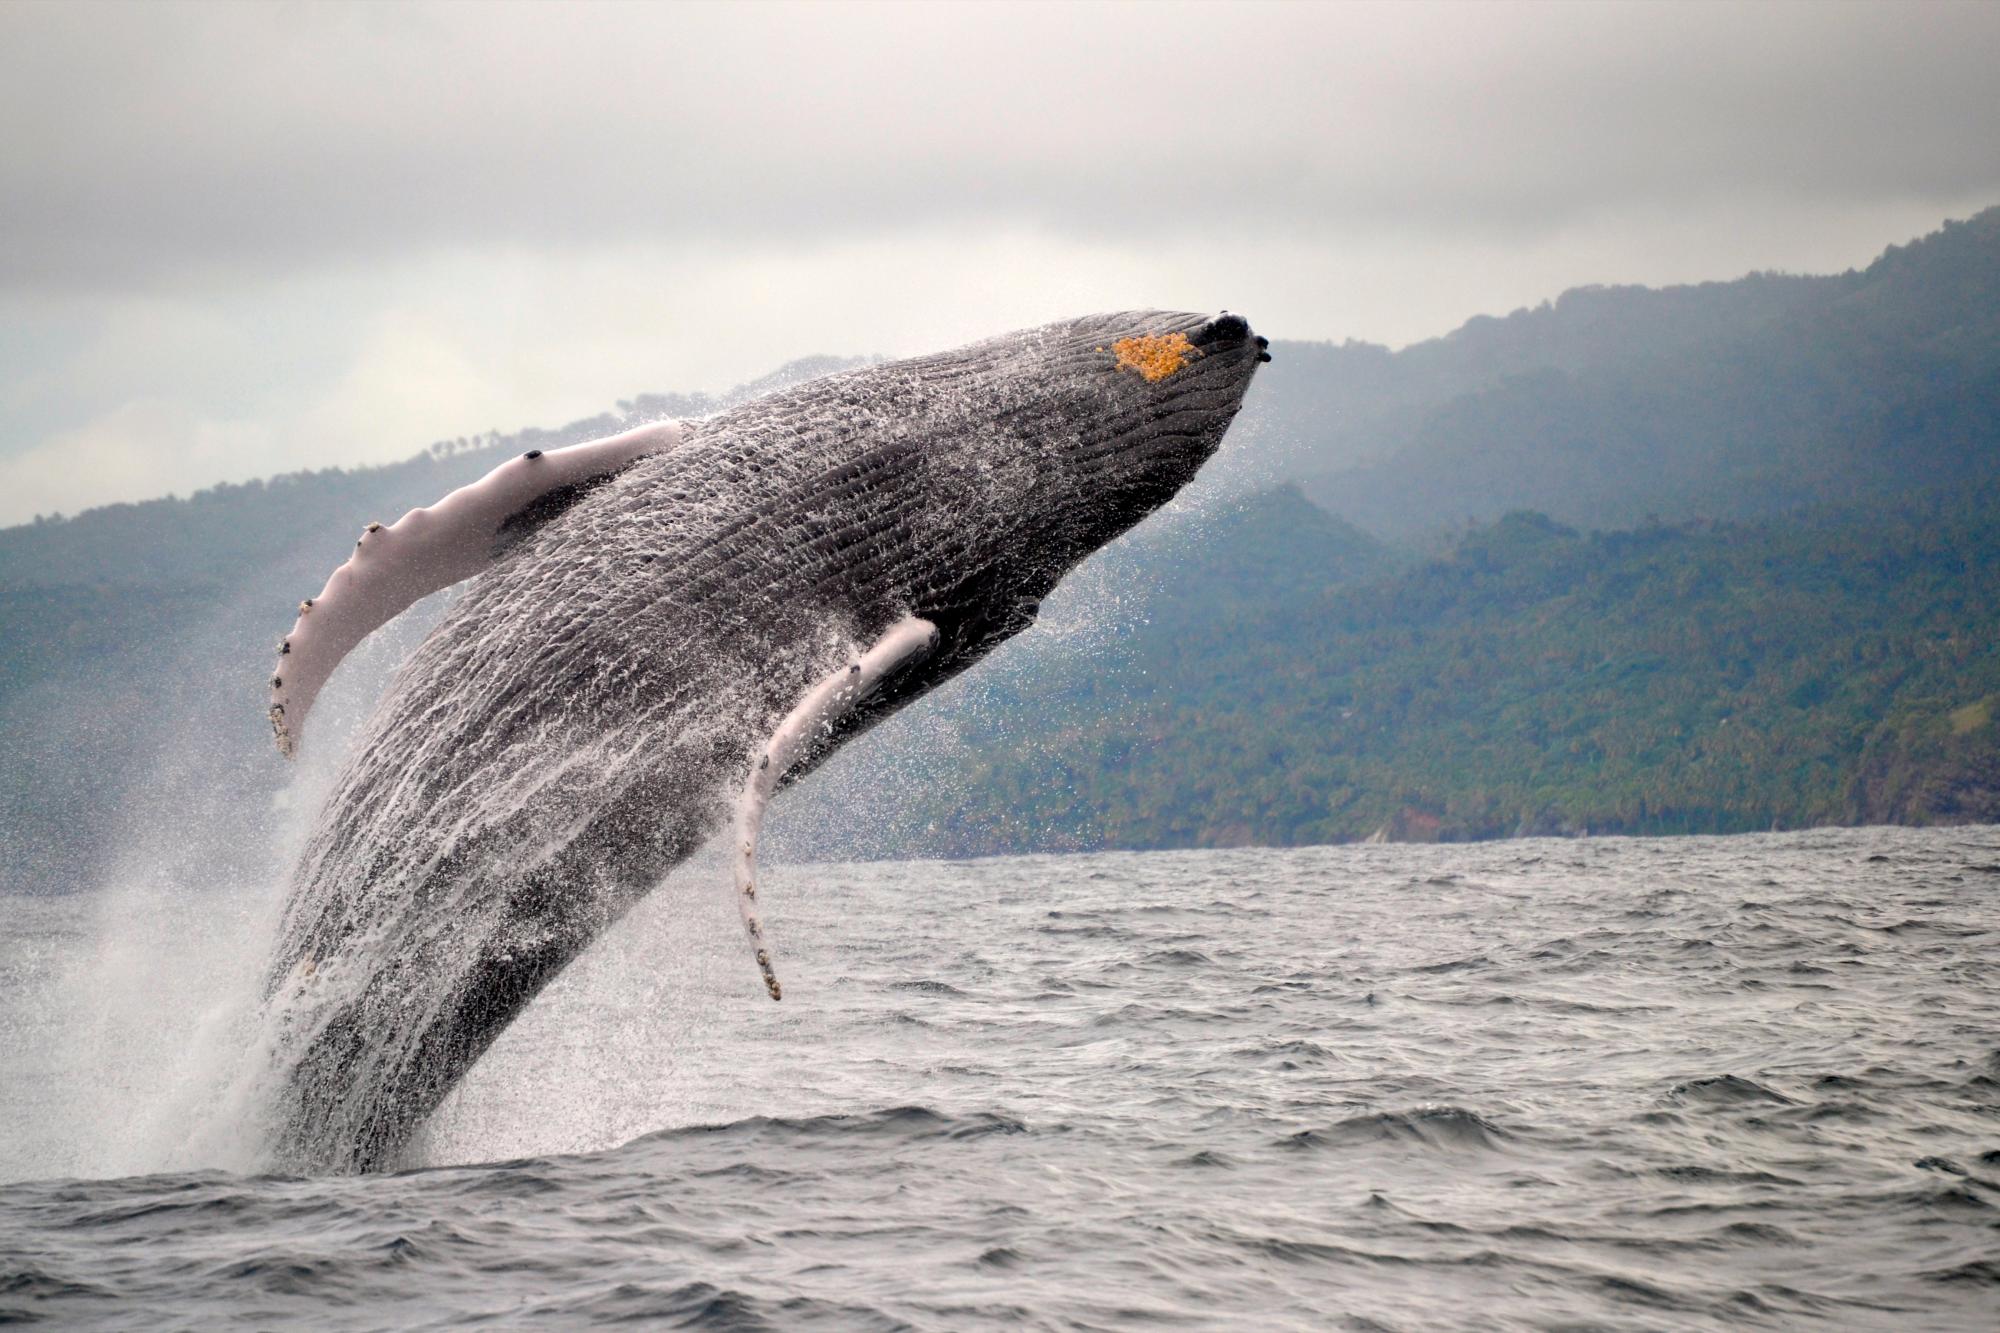 Impresionante salto de una ballena jorobada en las aguas de Samaná.